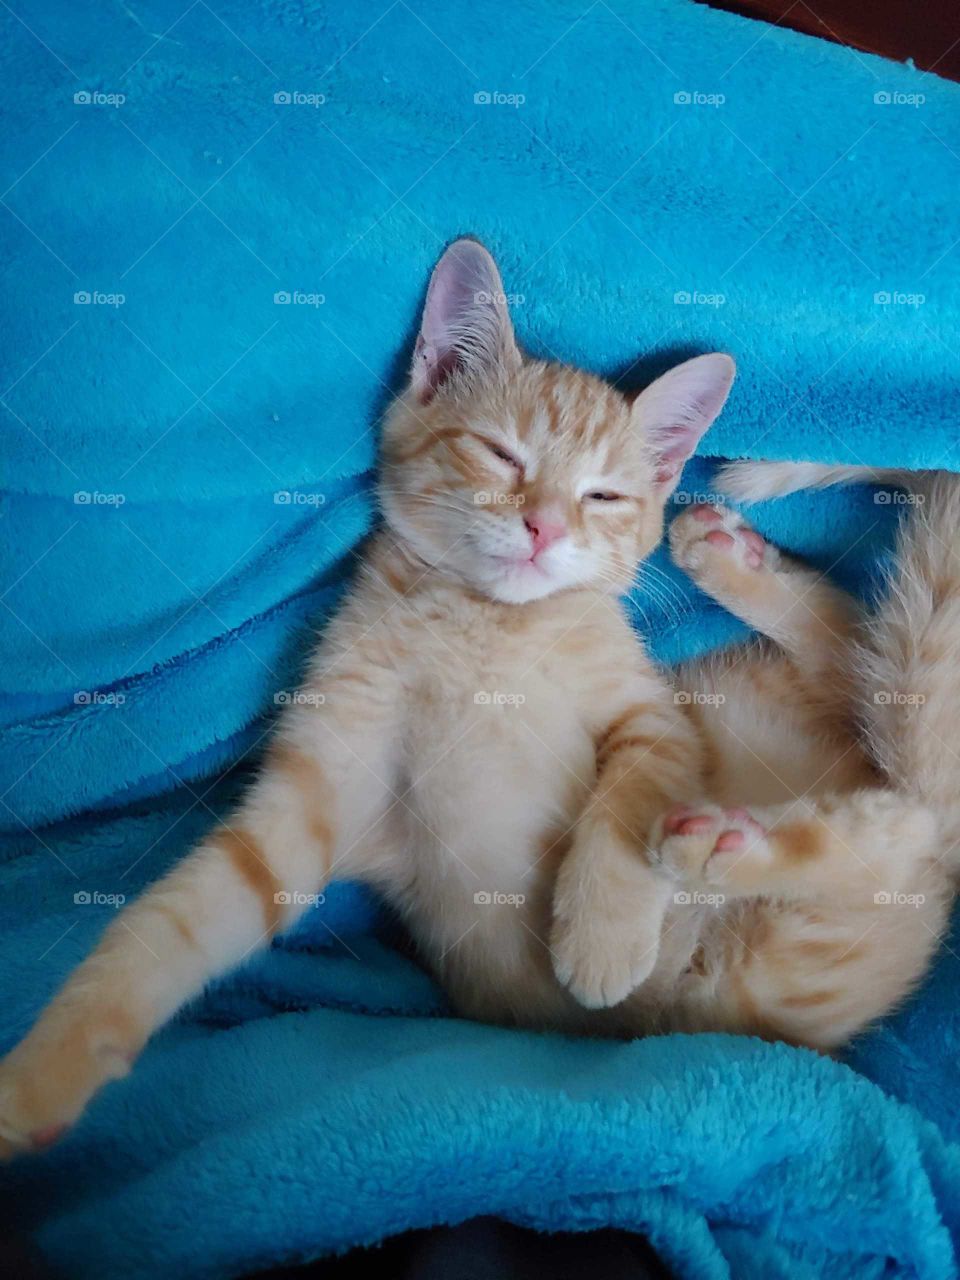 kitten cuddles